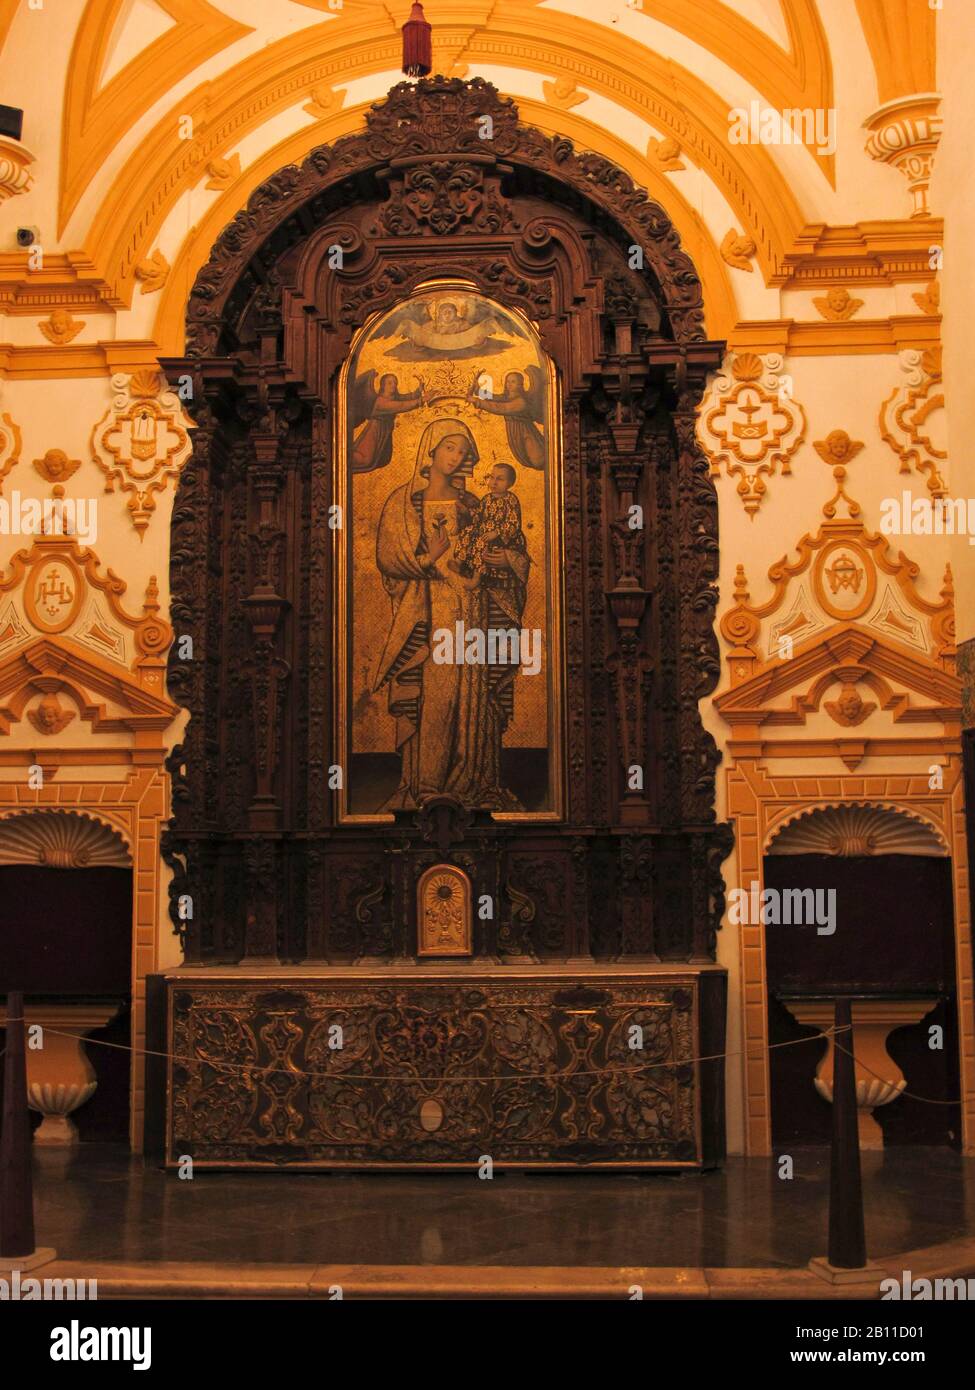 Retablo der Antigua Virgen. Reales Alcazares. Sevilla. Andalusien. Spanien Stockfoto